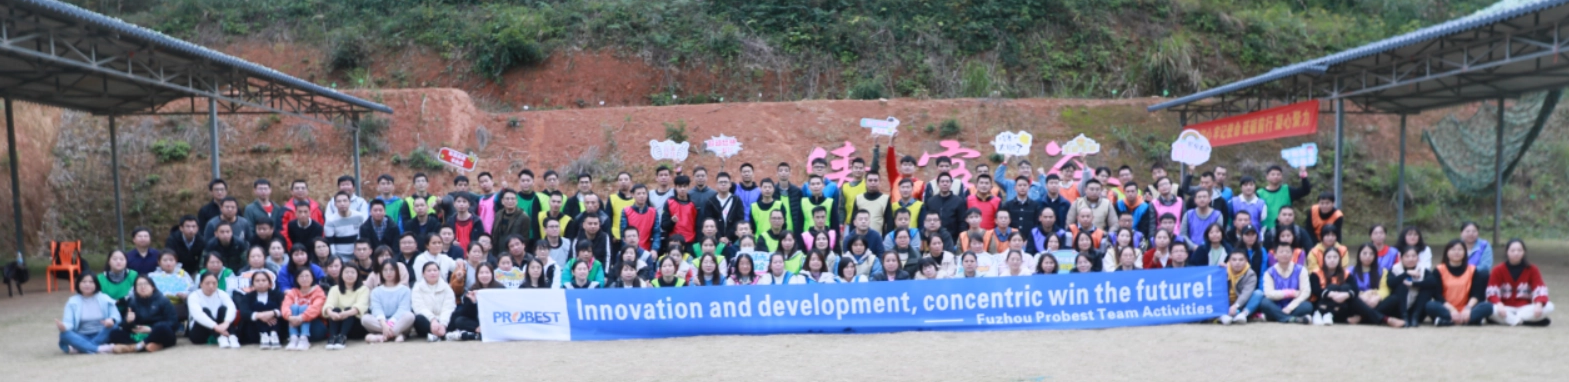 ¡Trabajad juntos, cread un futuro mejor!Actividad de formación de equipos de Fuzhou Probest